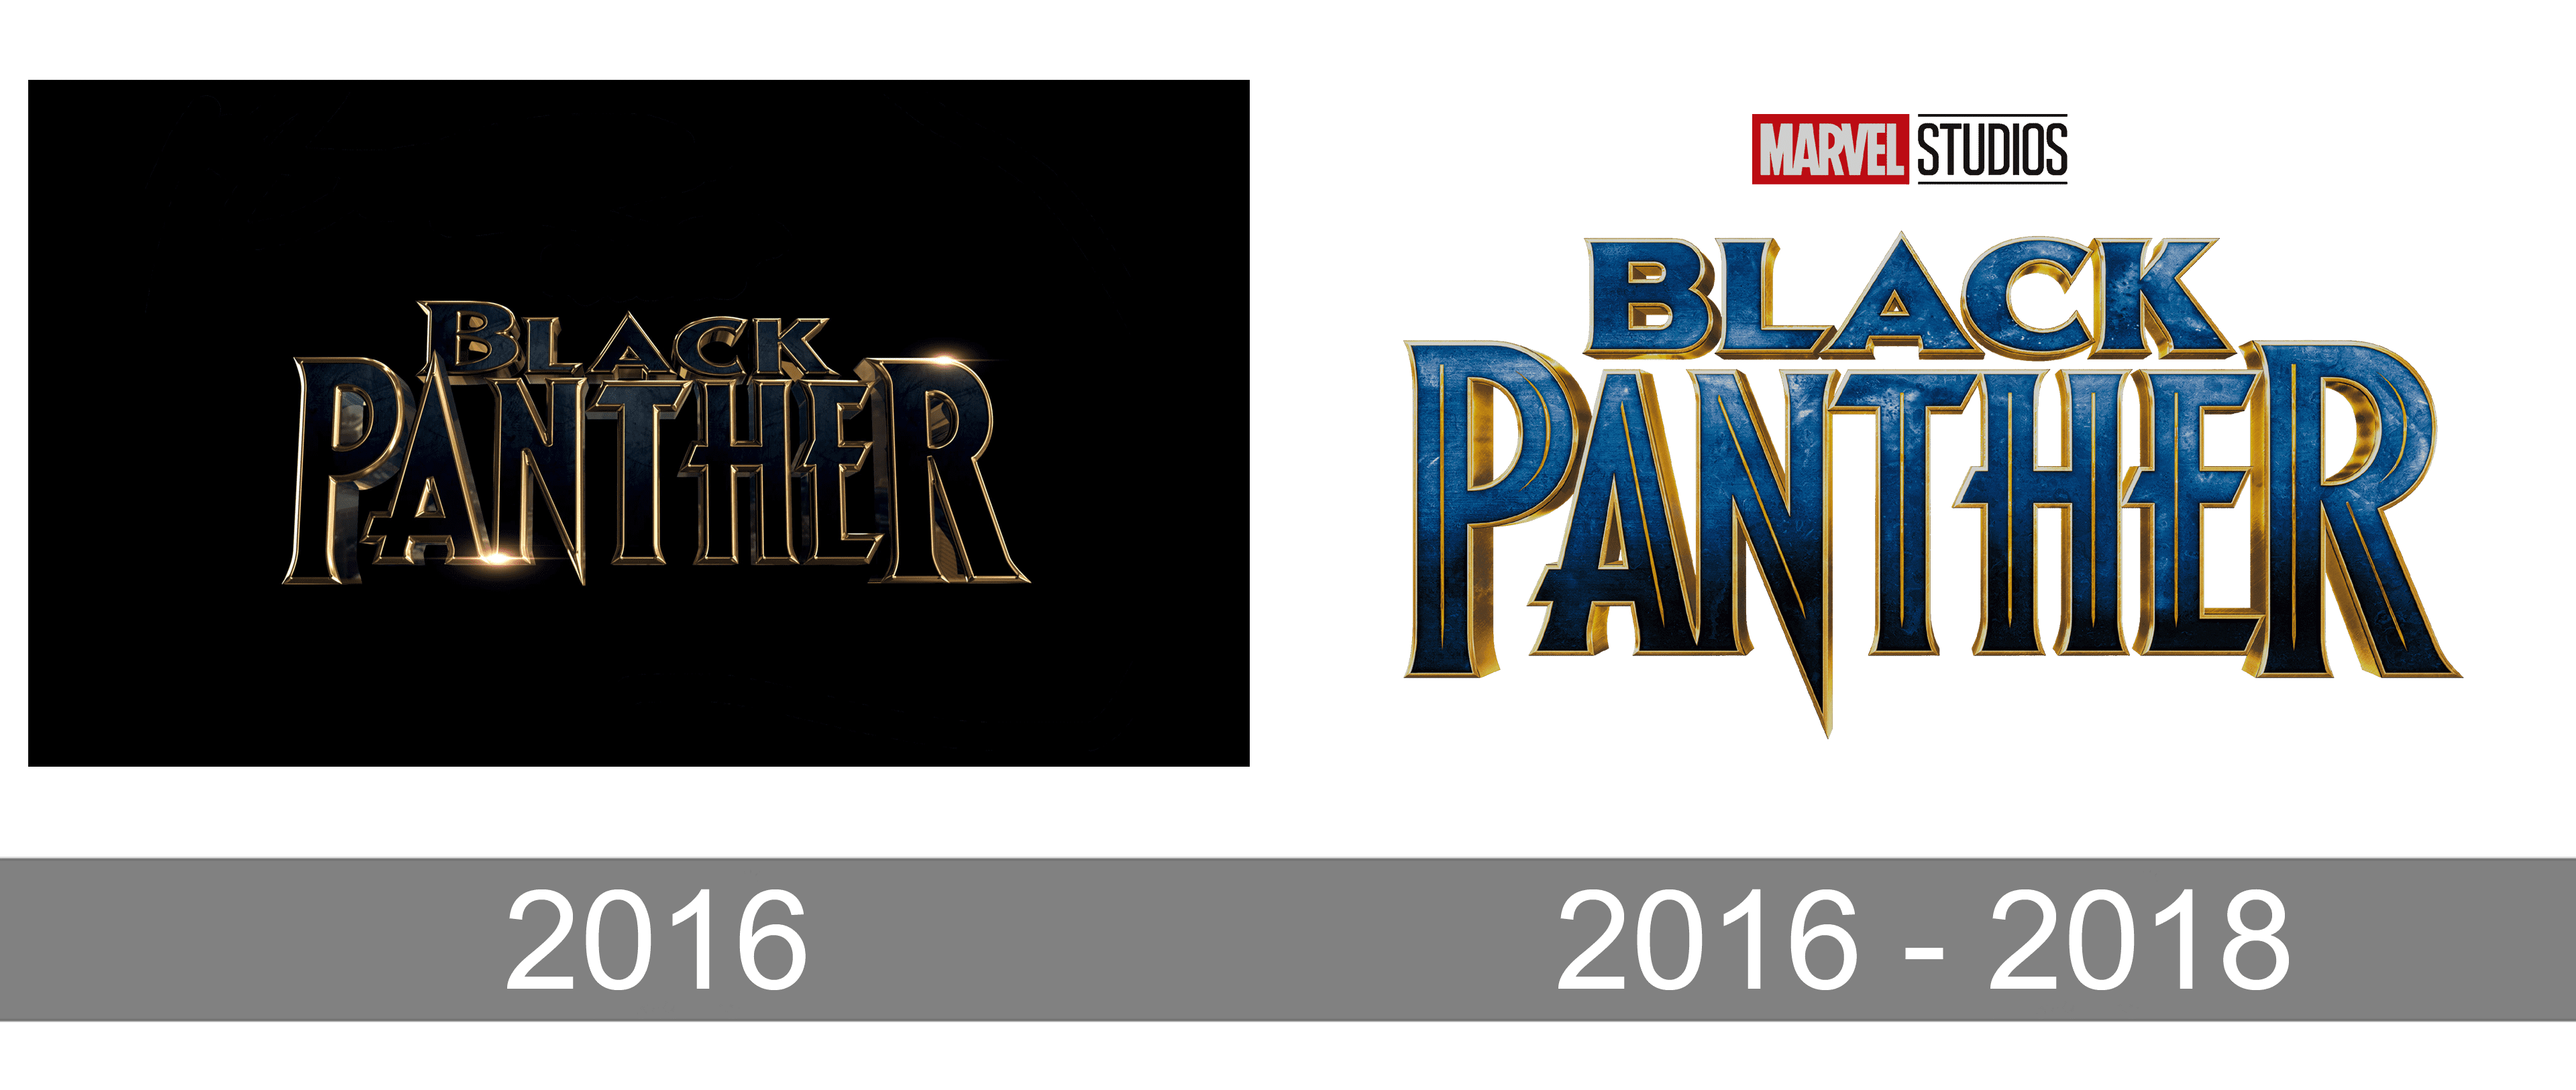 Black Panther Logo | Black panther, Black panther art, Black panther marvel